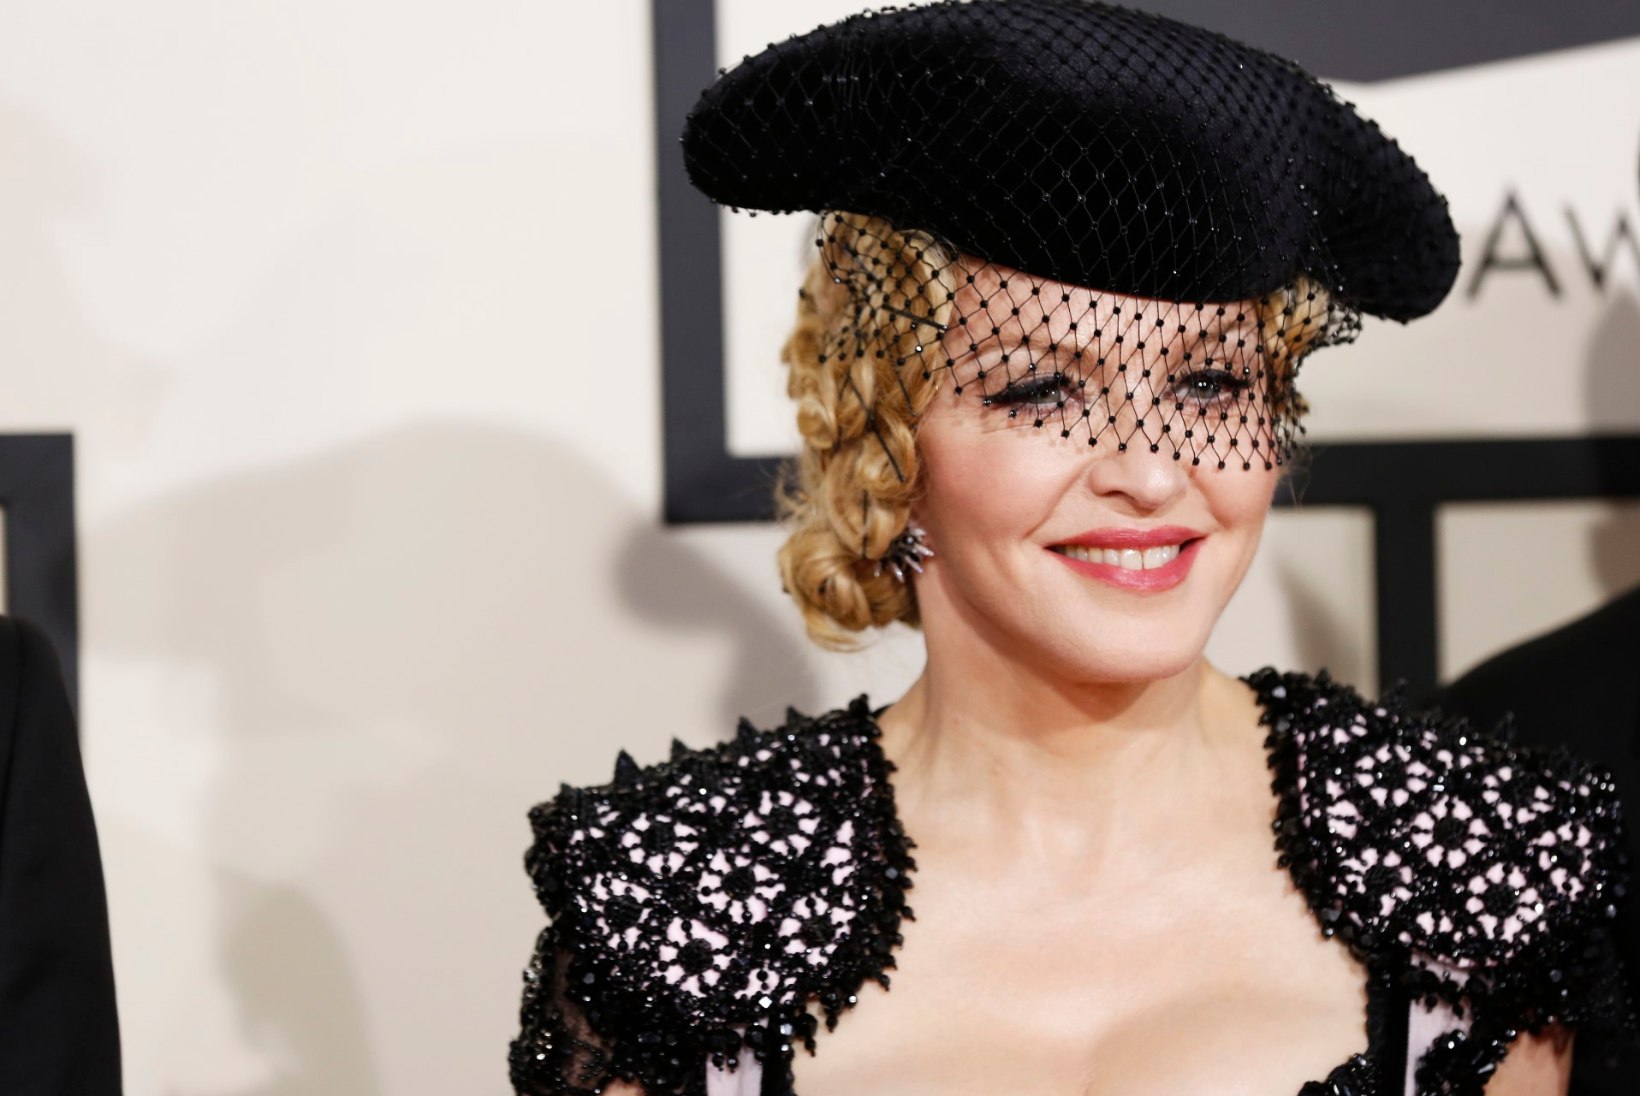 Madonna astus uude aastasse uue tagumikuga?!